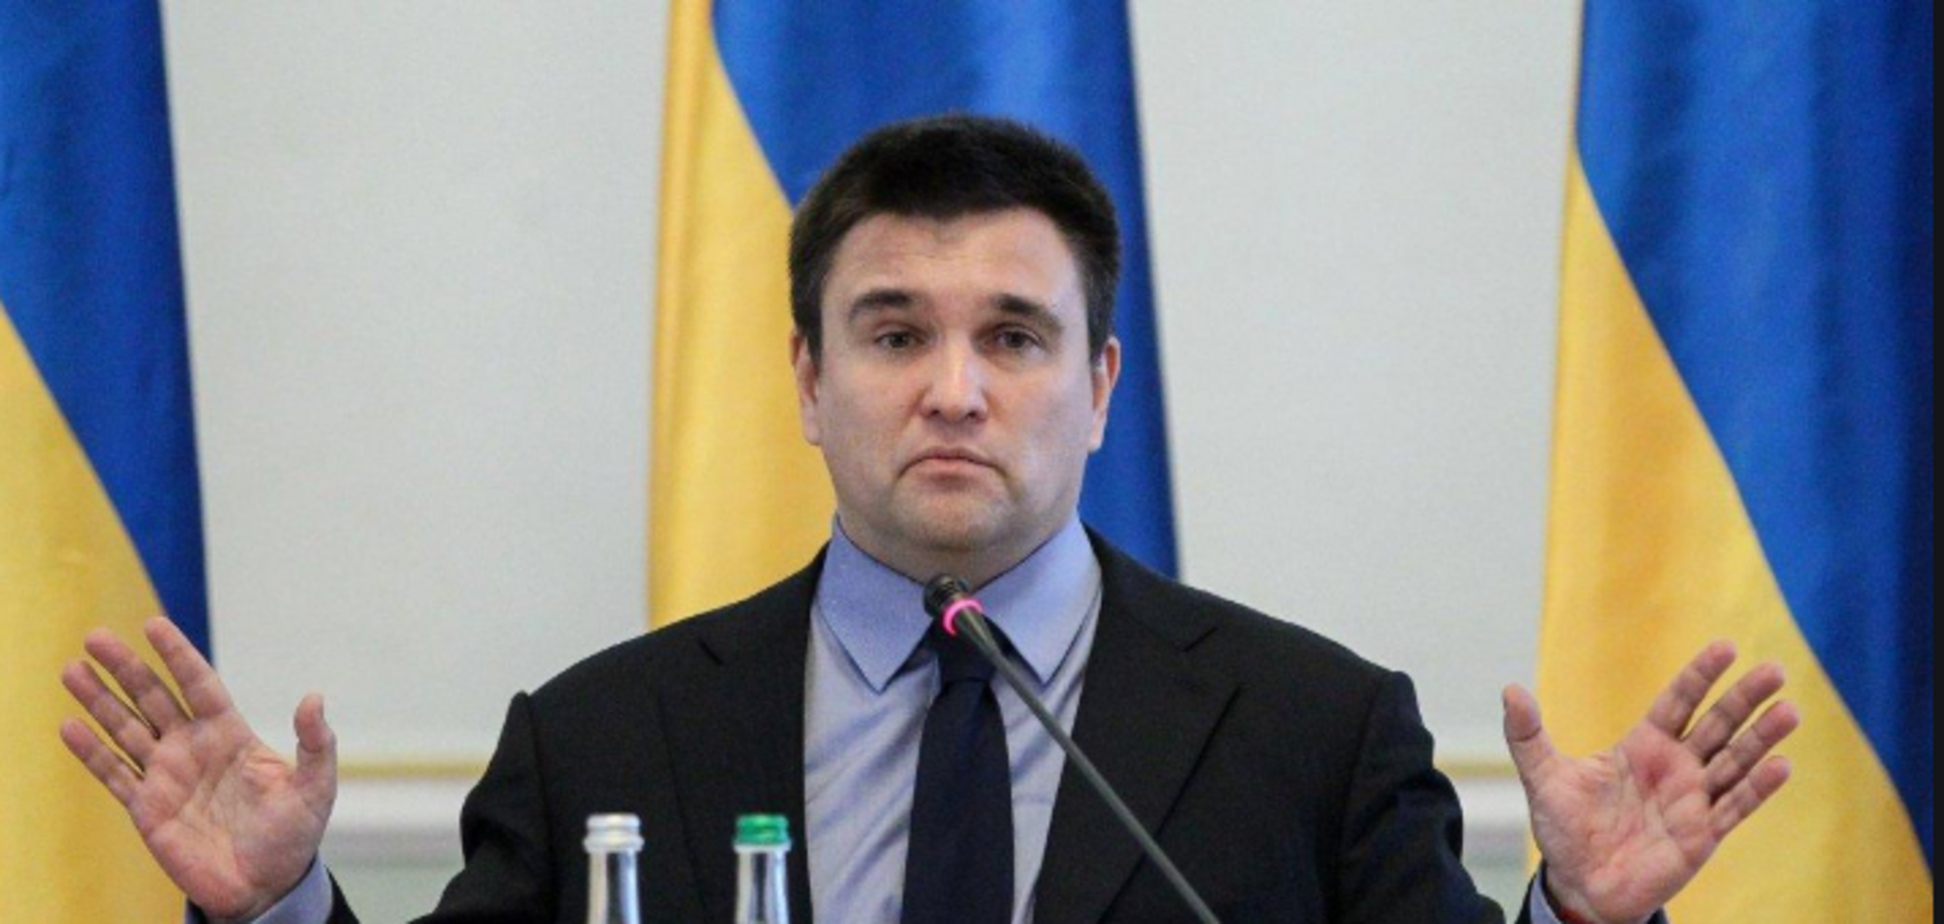 Климкин разнес идею о выборах на Донбассе